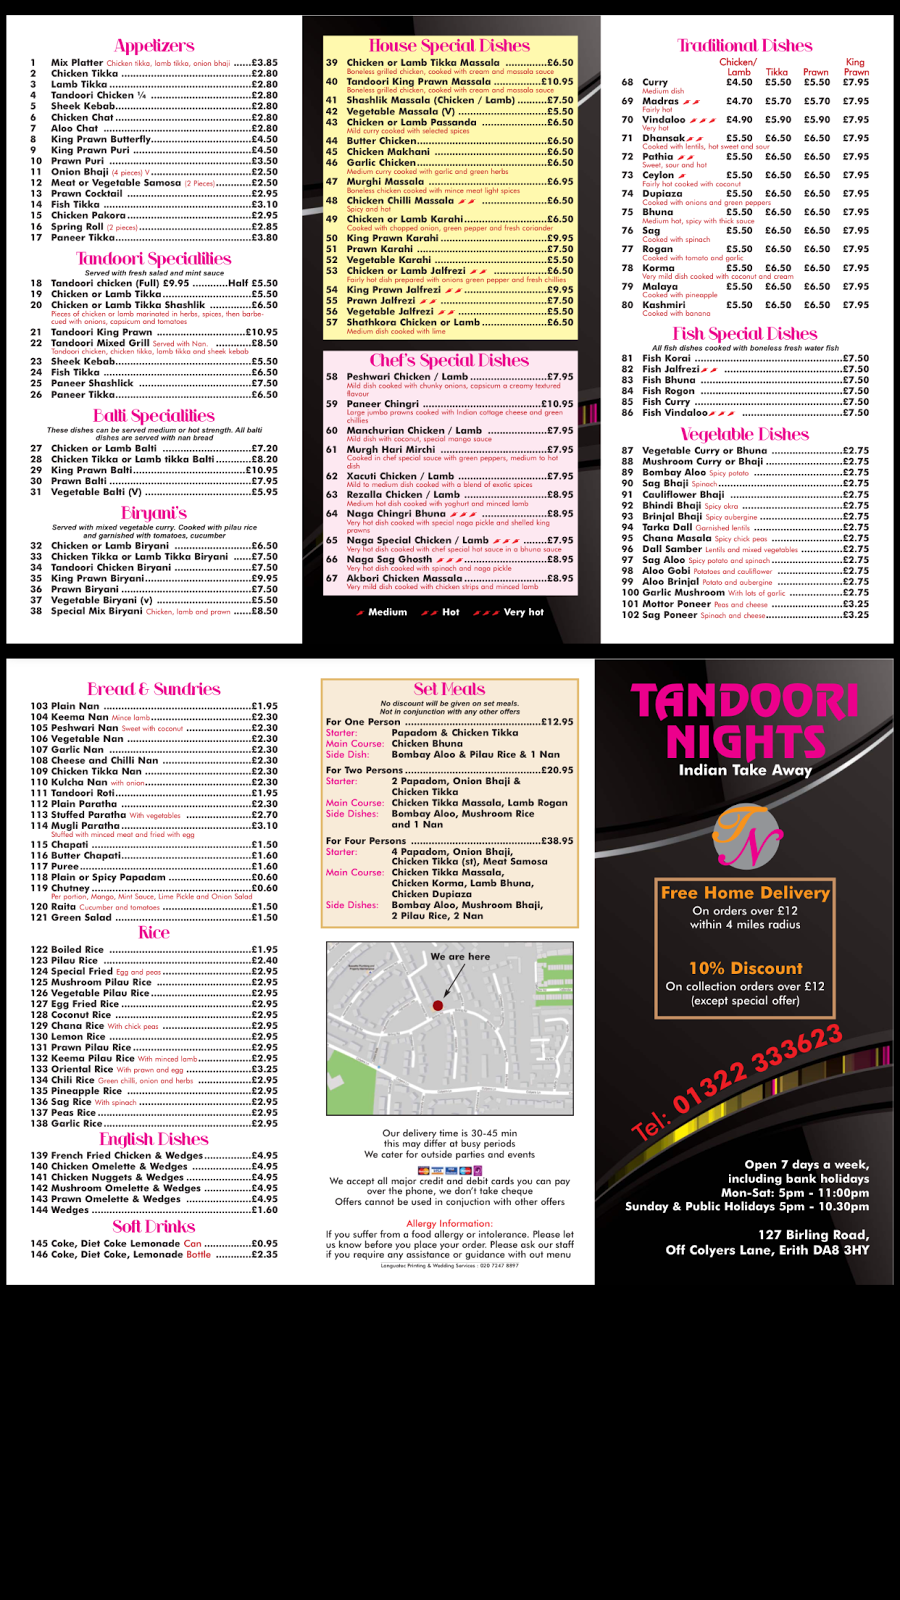 Tandoori Nights Erith | 127 Birling Rd, Erith DA8 3HY, UK | Phone: 01322 333623